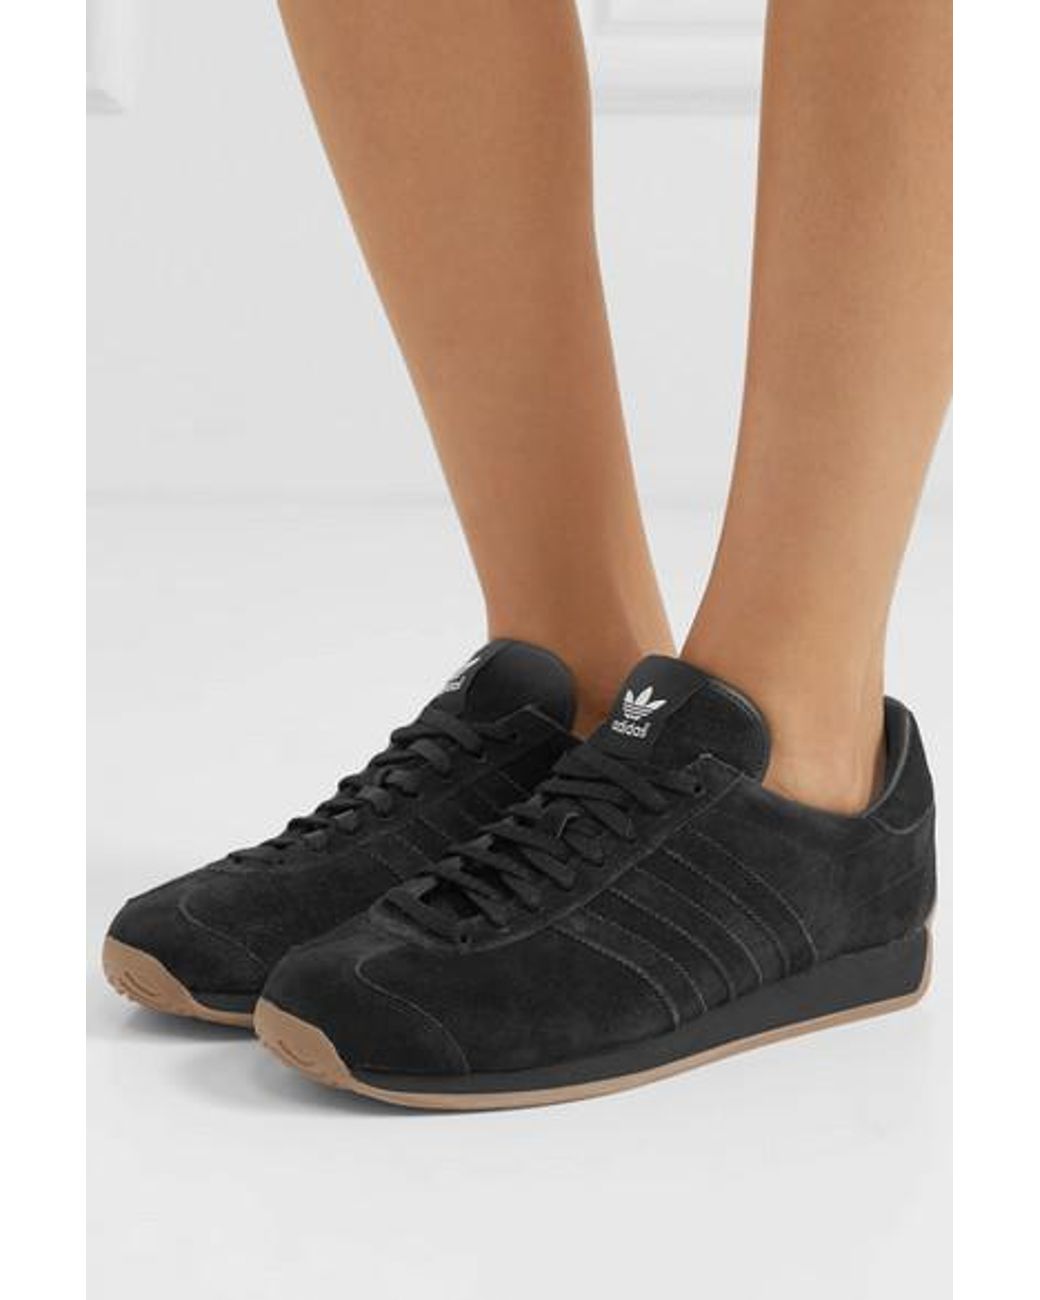 Khaite Denim + Adidas Originals Suede Sneakers in Black | Lyst